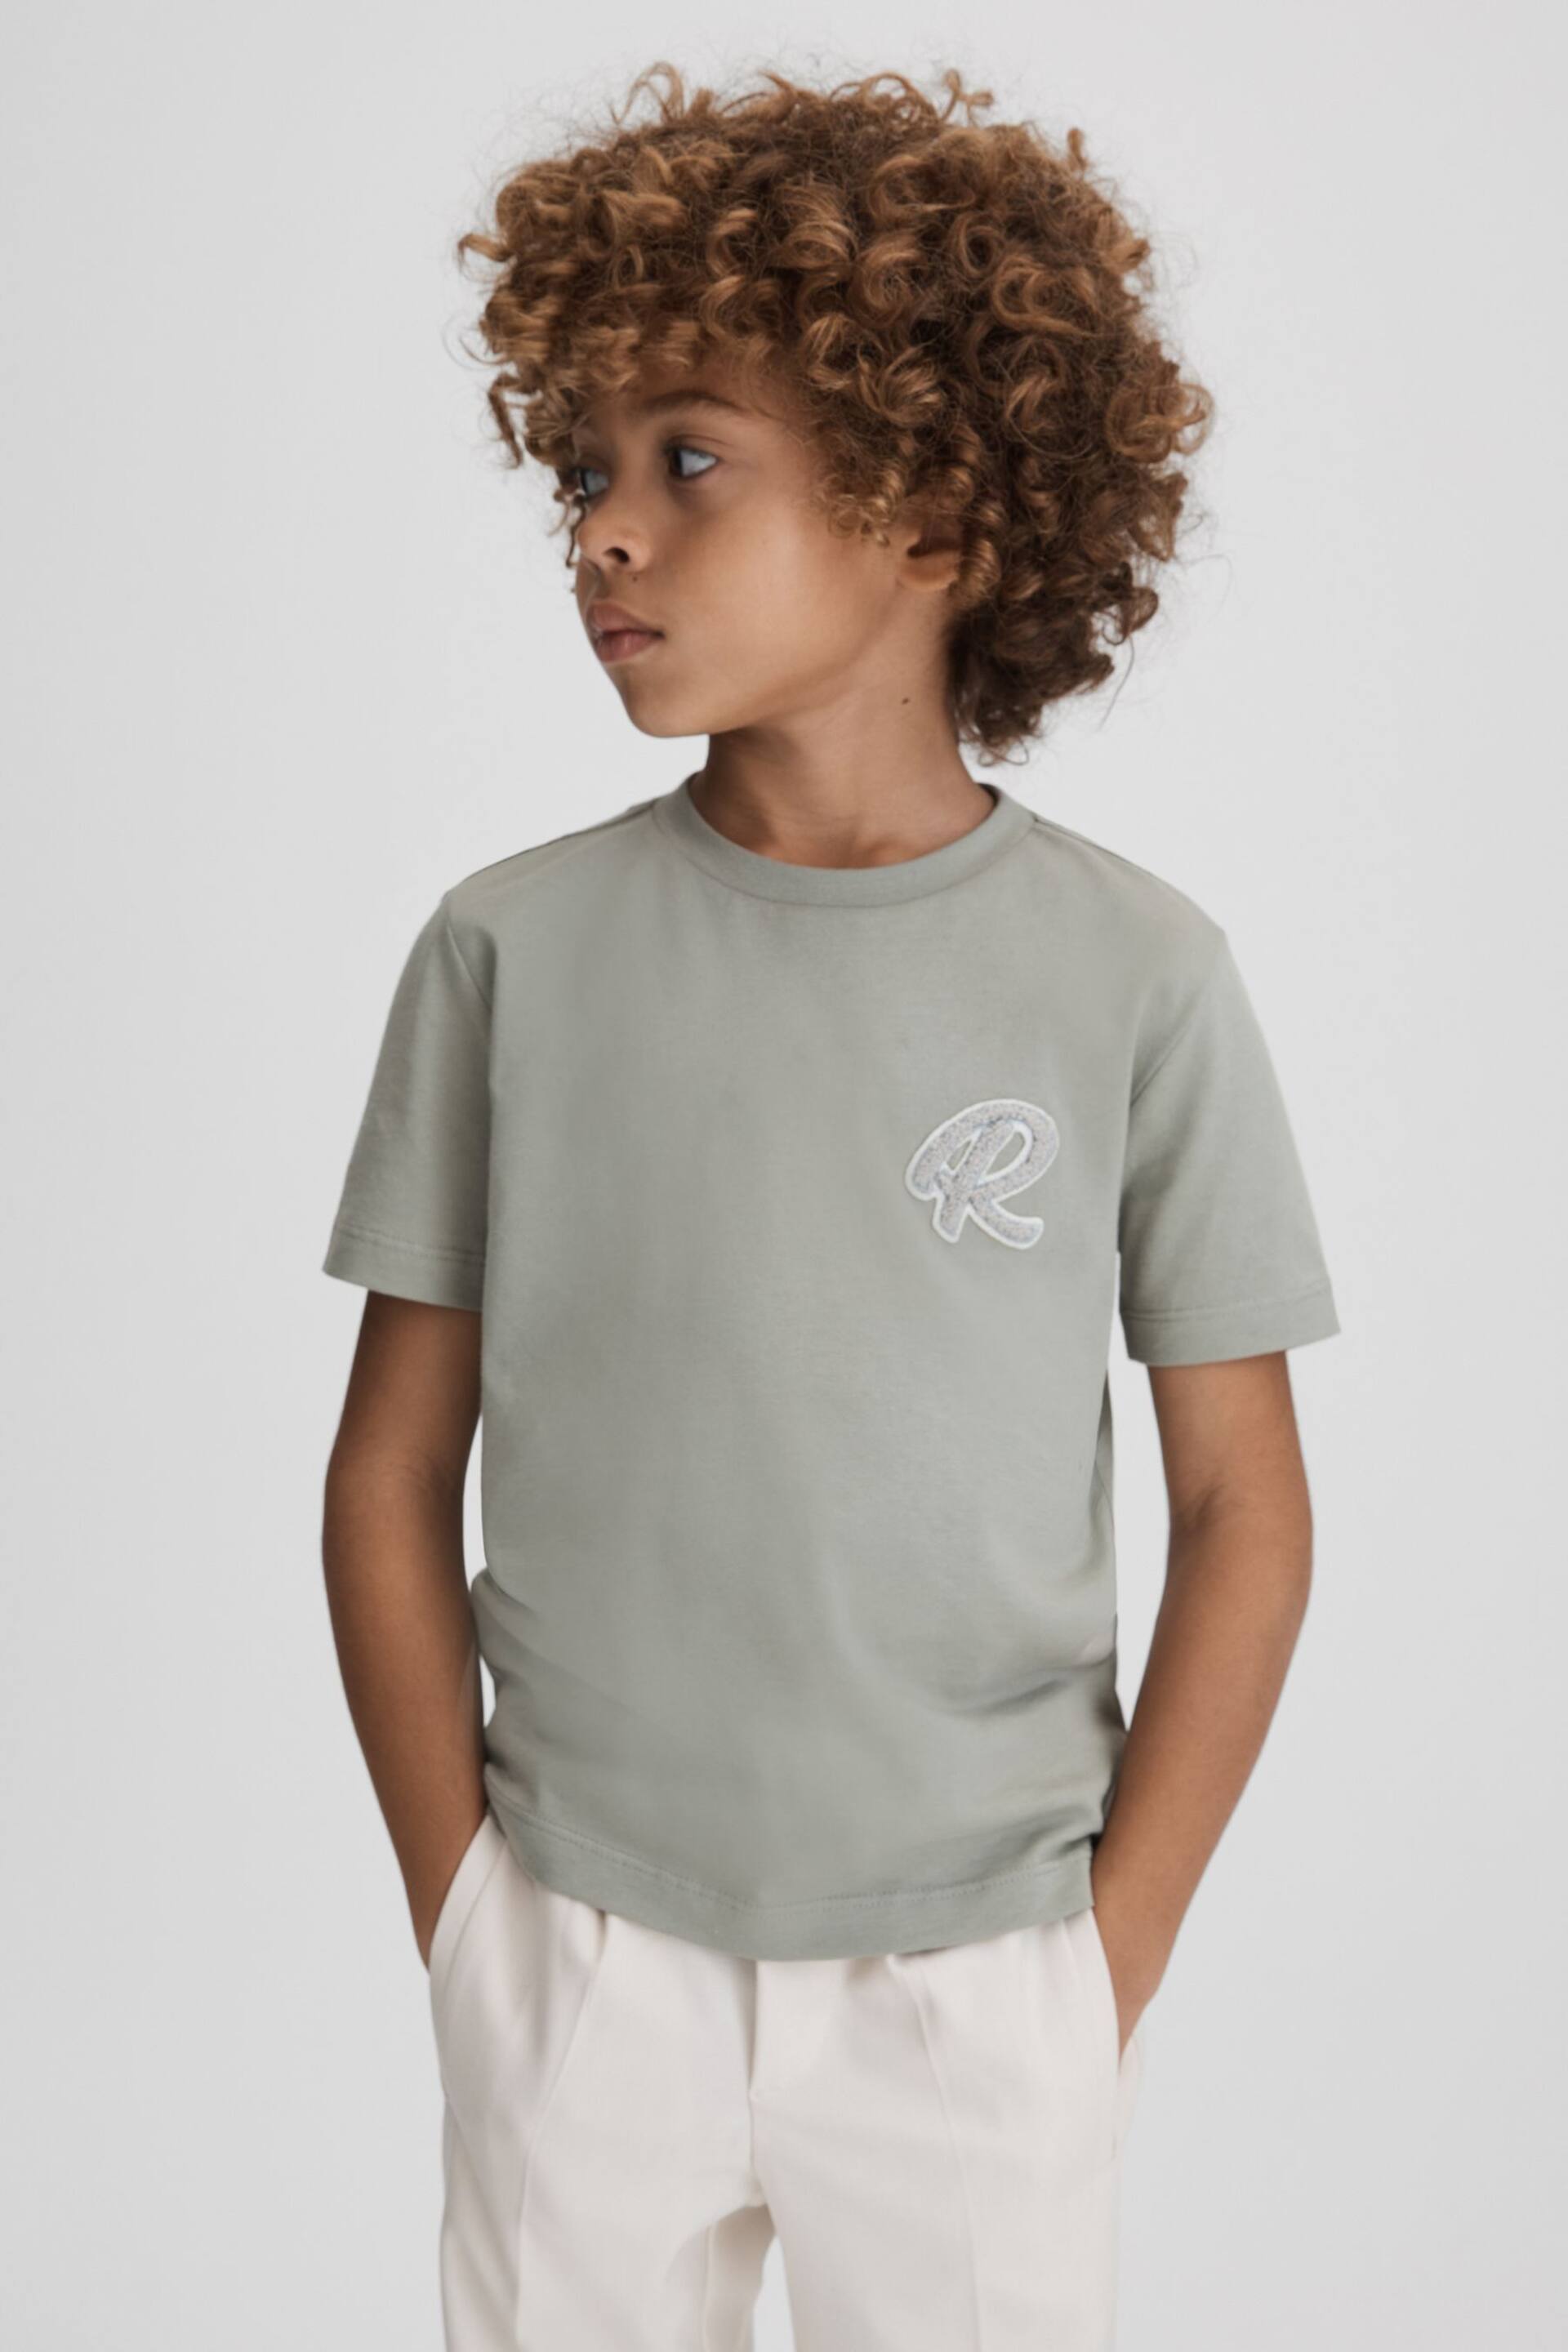 Reiss Pistachio Jude Junior Cotton Crew Neck T-Shirt - Image 1 of 6